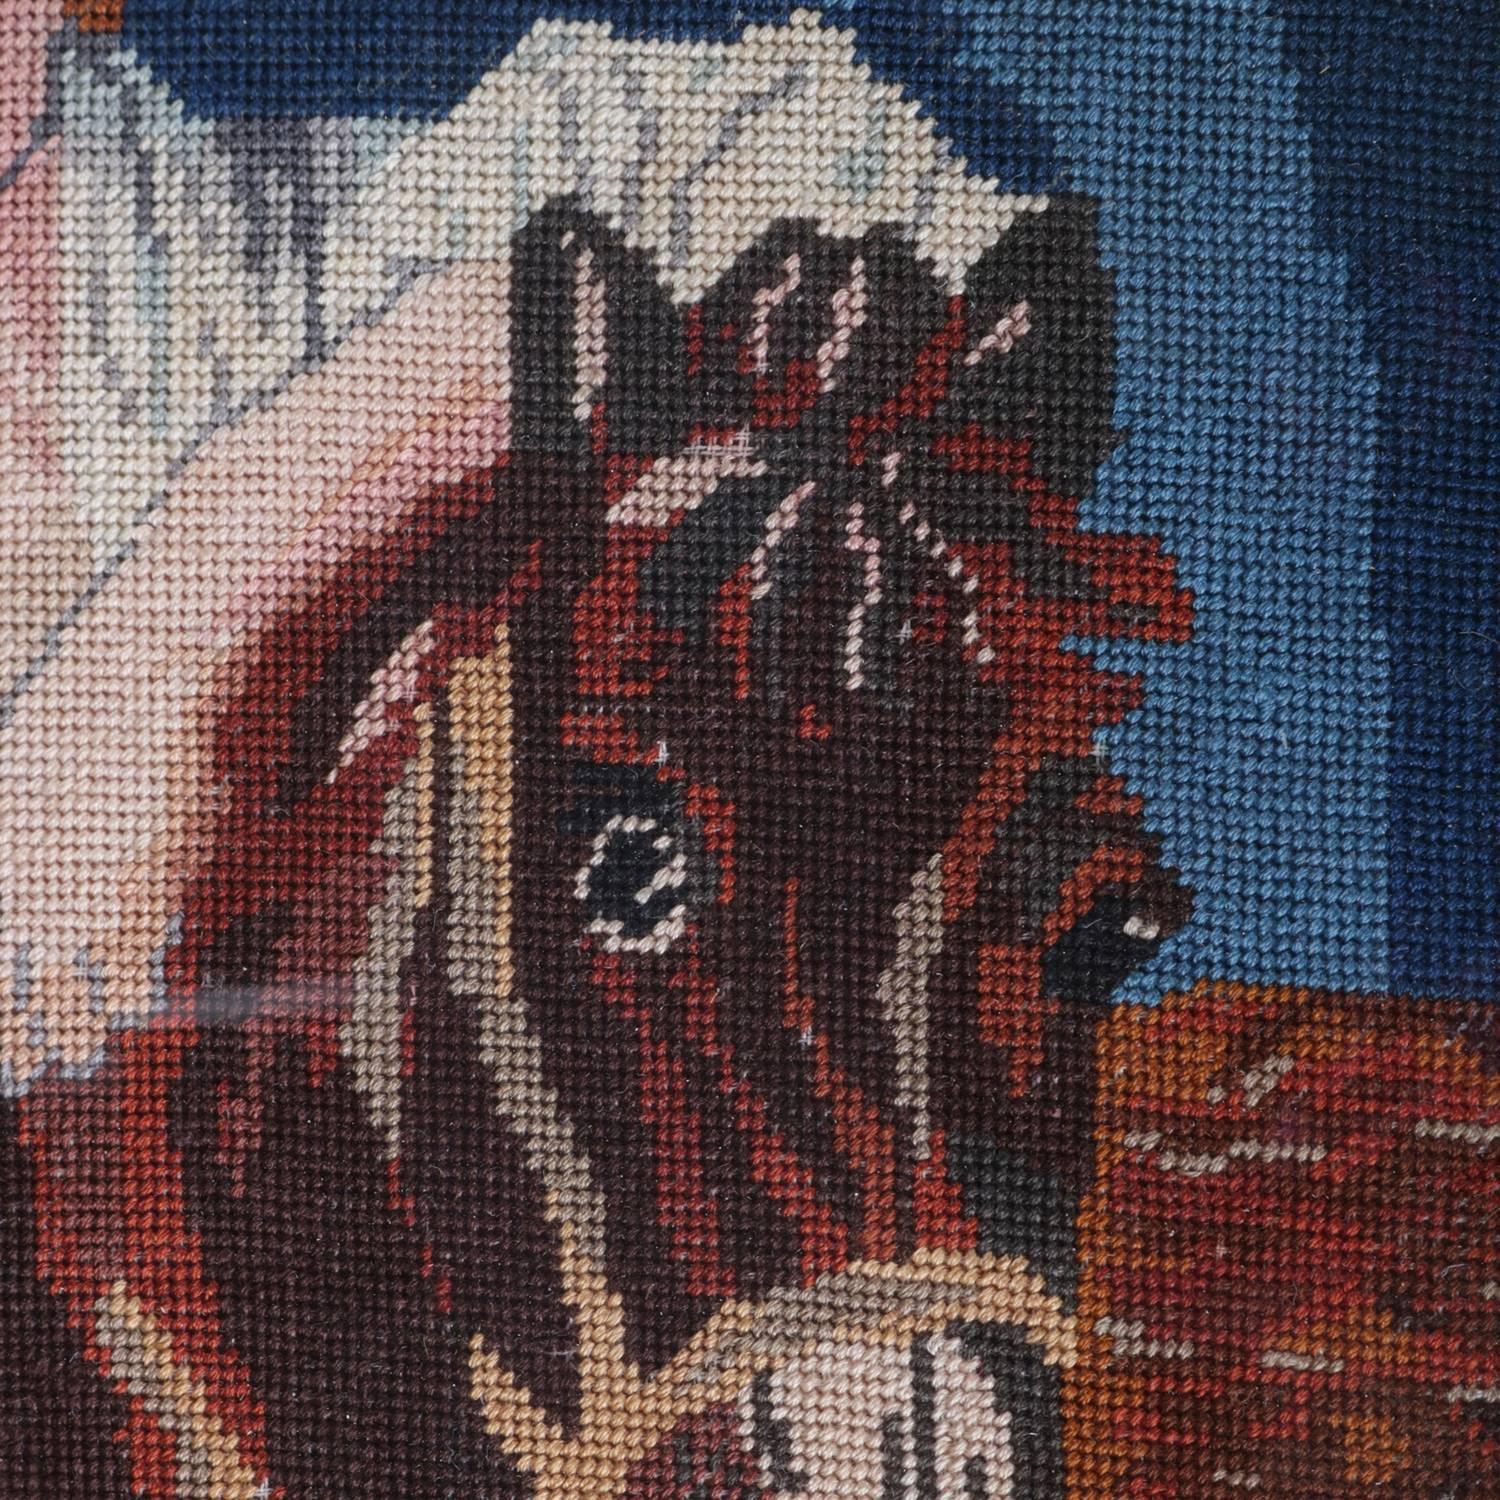 horse needlepoint